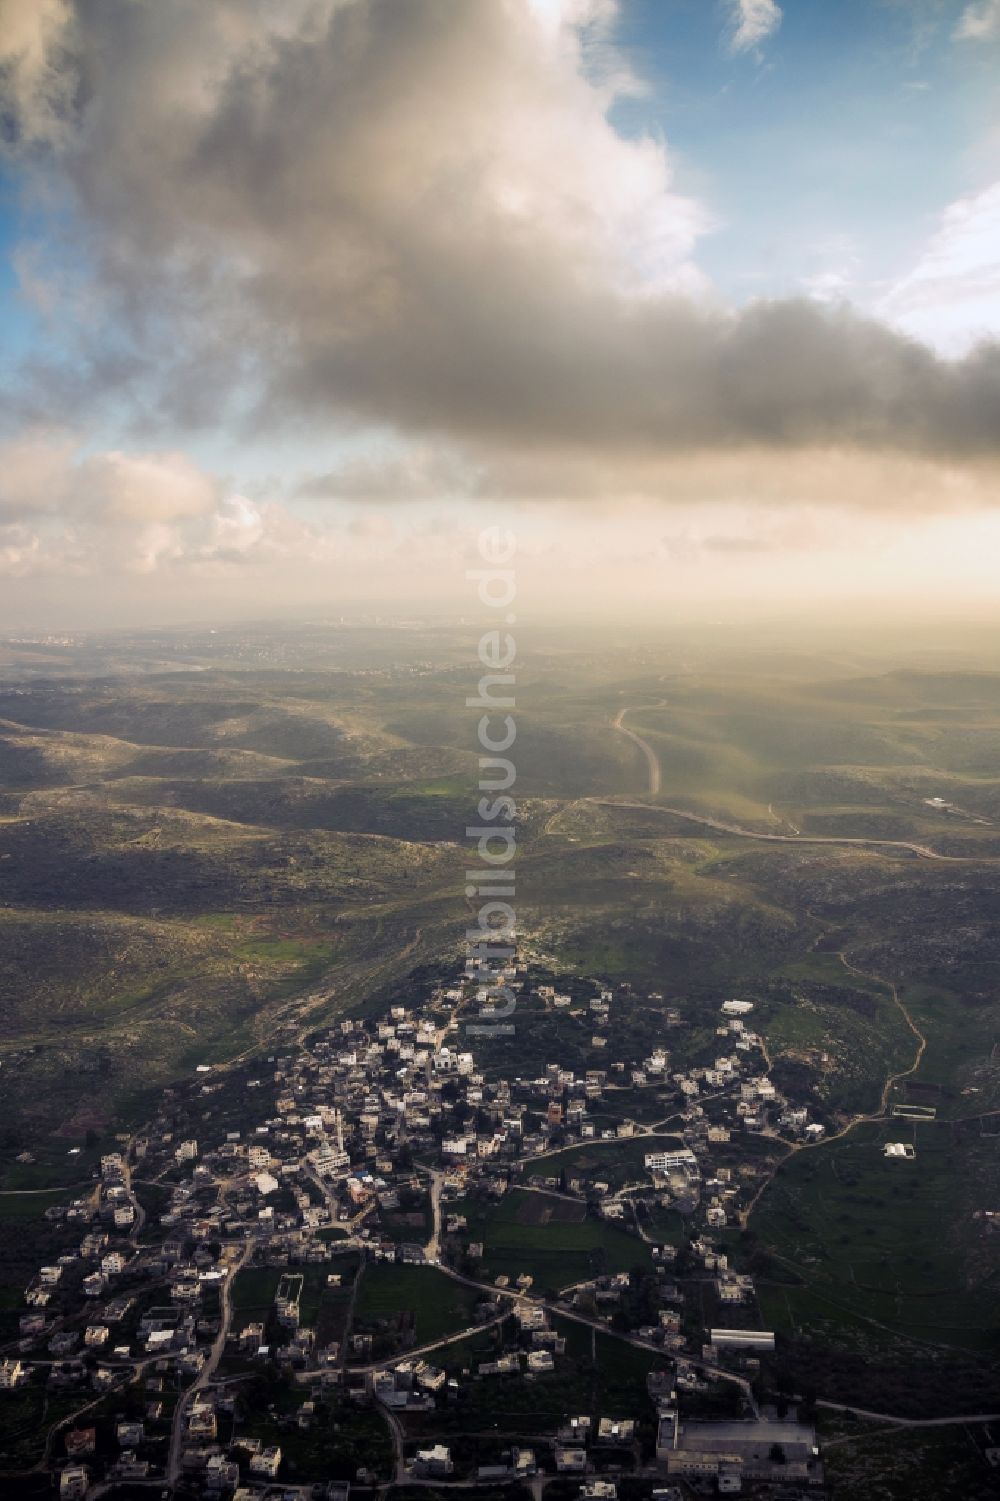 Rantis von oben - Die palästinensische Stadt Rantis im Westjordanland